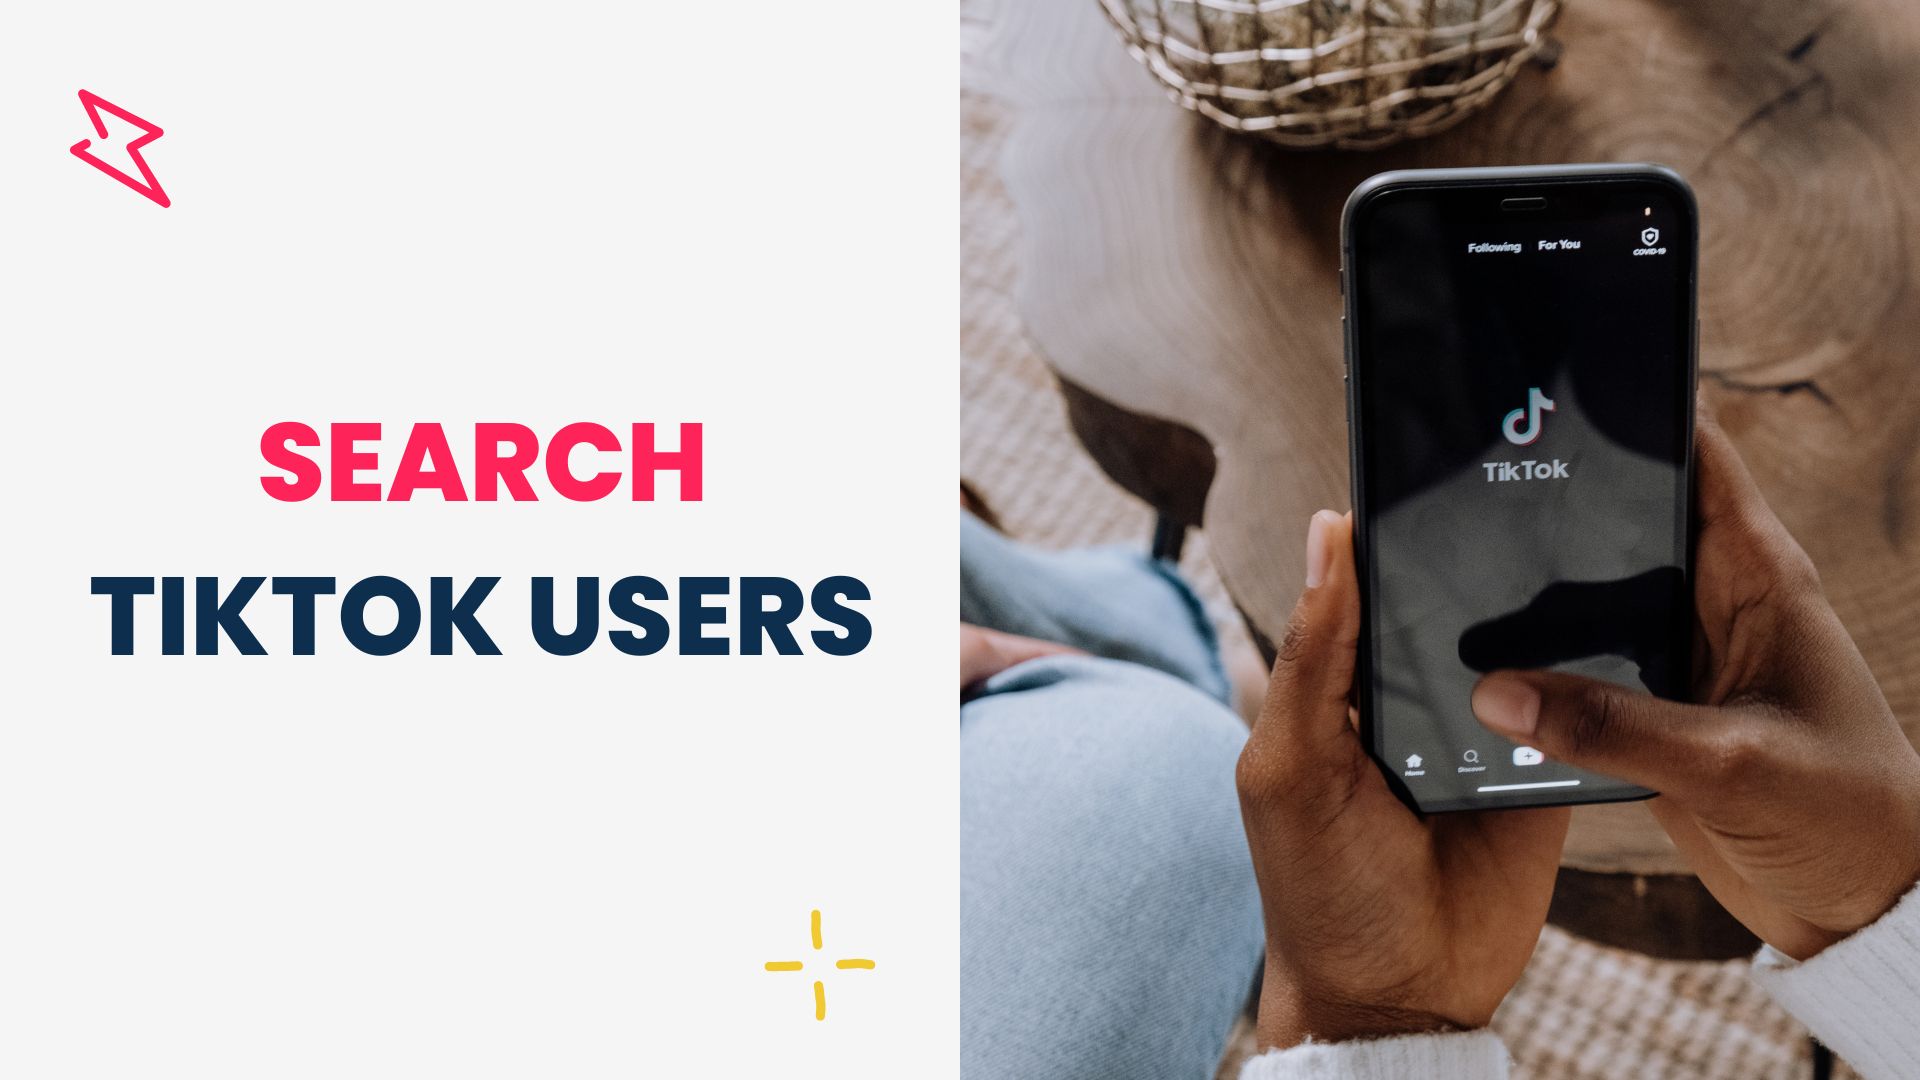 Search TikTok users tool